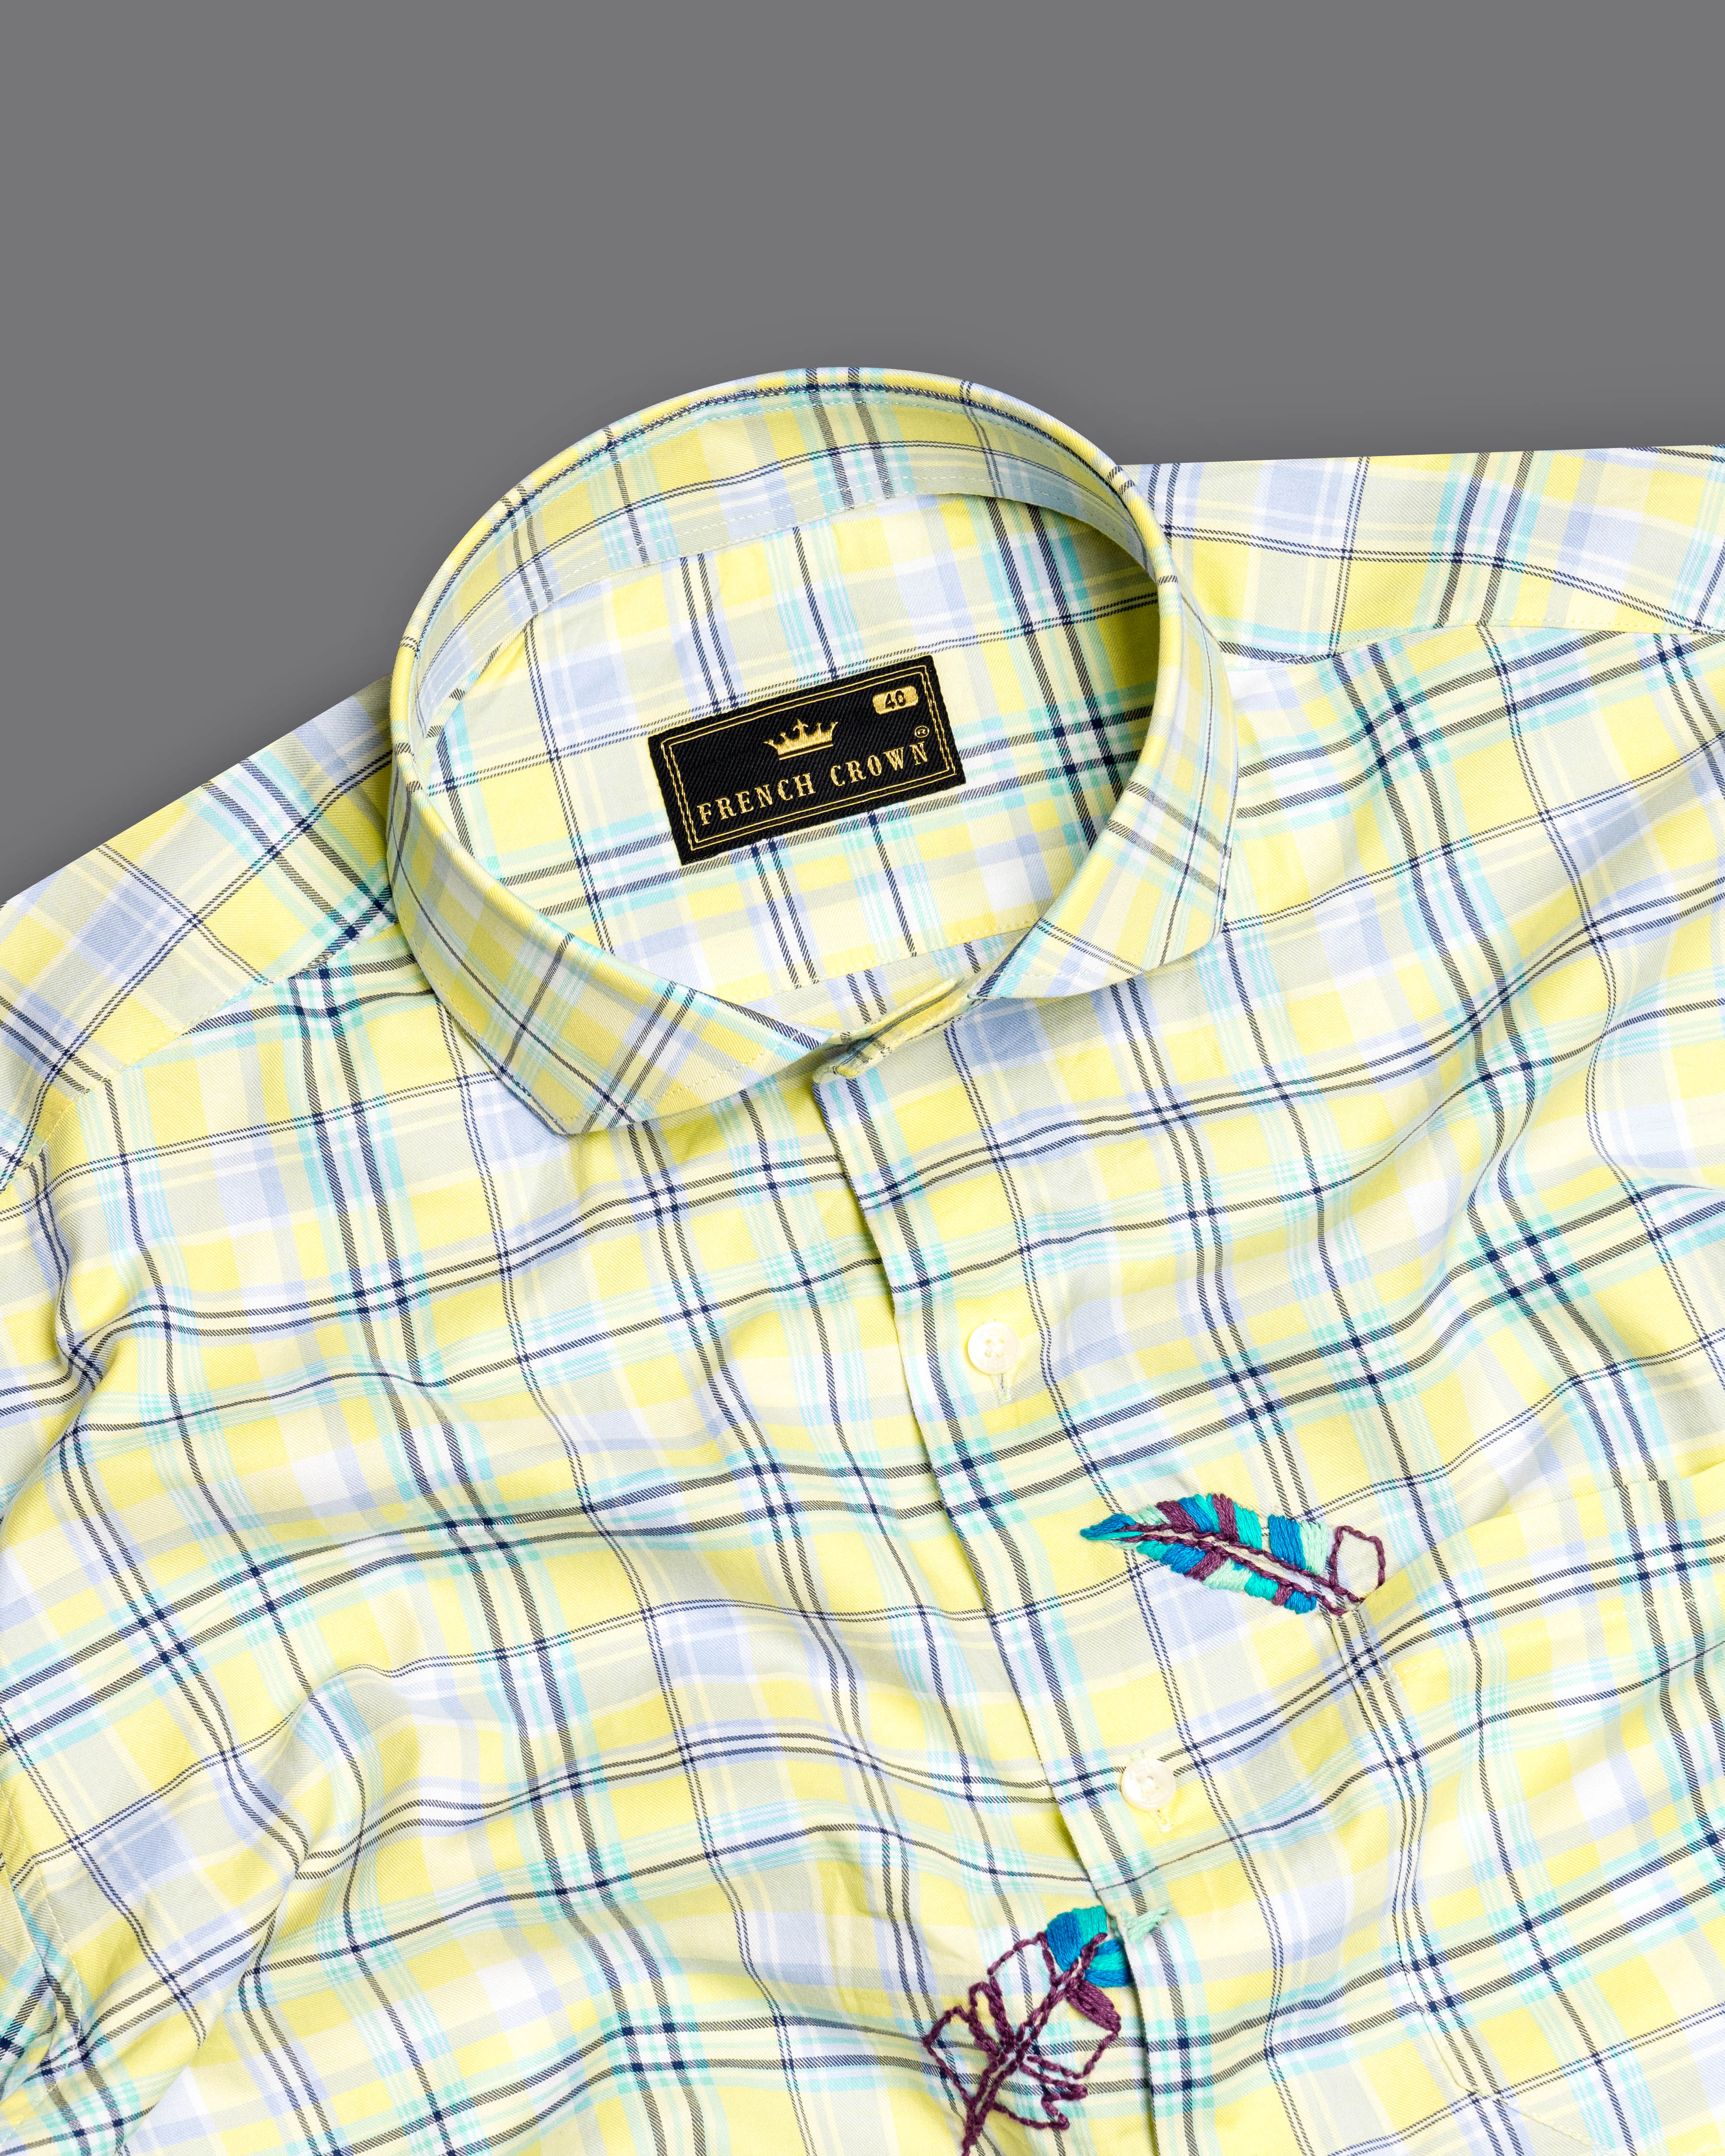 Manilla Yellow Checked with Leaves Embroidered Twill Premium Cotton Designer Shirt 7046-CA-E082-38, 7046-CA-E082-H-38, 7046-CA-E082-39, 7046-CA-E082-H-39, 7046-CA-E082-40, 7046-CA-E082-H-40, 7046-CA-E082-42, 7046-CA-E082-H-42, 7046-CA-E082-44, 7046-CA-E082-H-44, 7046-CA-E082-46, 7046-CA-E082-H-46, 7046-CA-E082-48, 7046-CA-E082-H-48, 7046-CA-E082-50, 7046-CA-E082-H-50, 7046-CA-E082-52, 7046-CA-E082-H-52